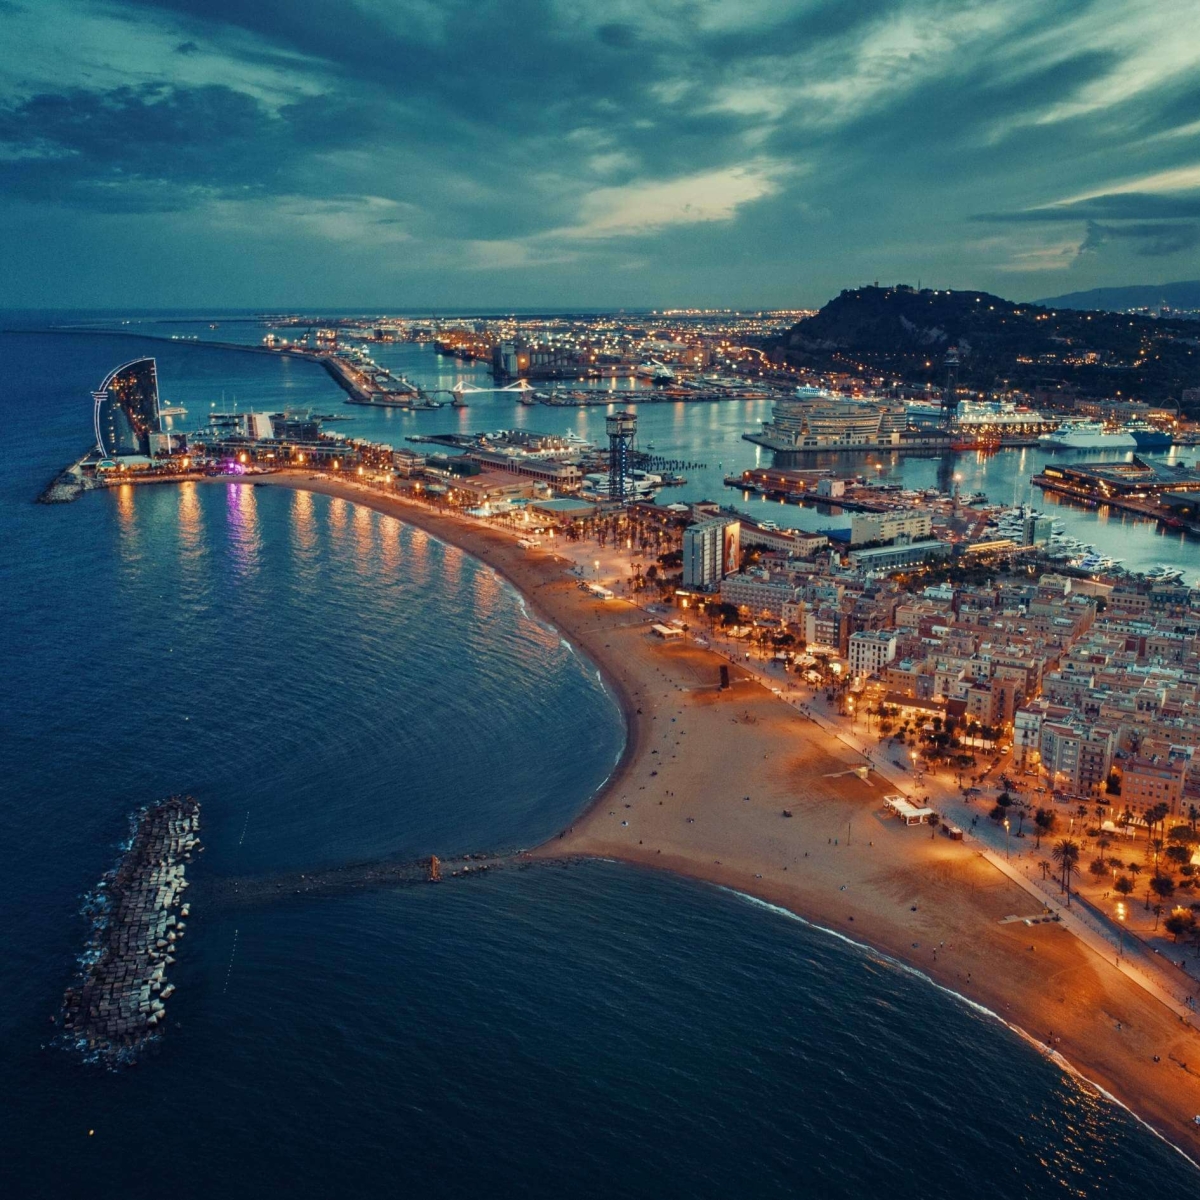 Vue aérienne de la jetée de la côte de Barcelone la nuit en Espagne